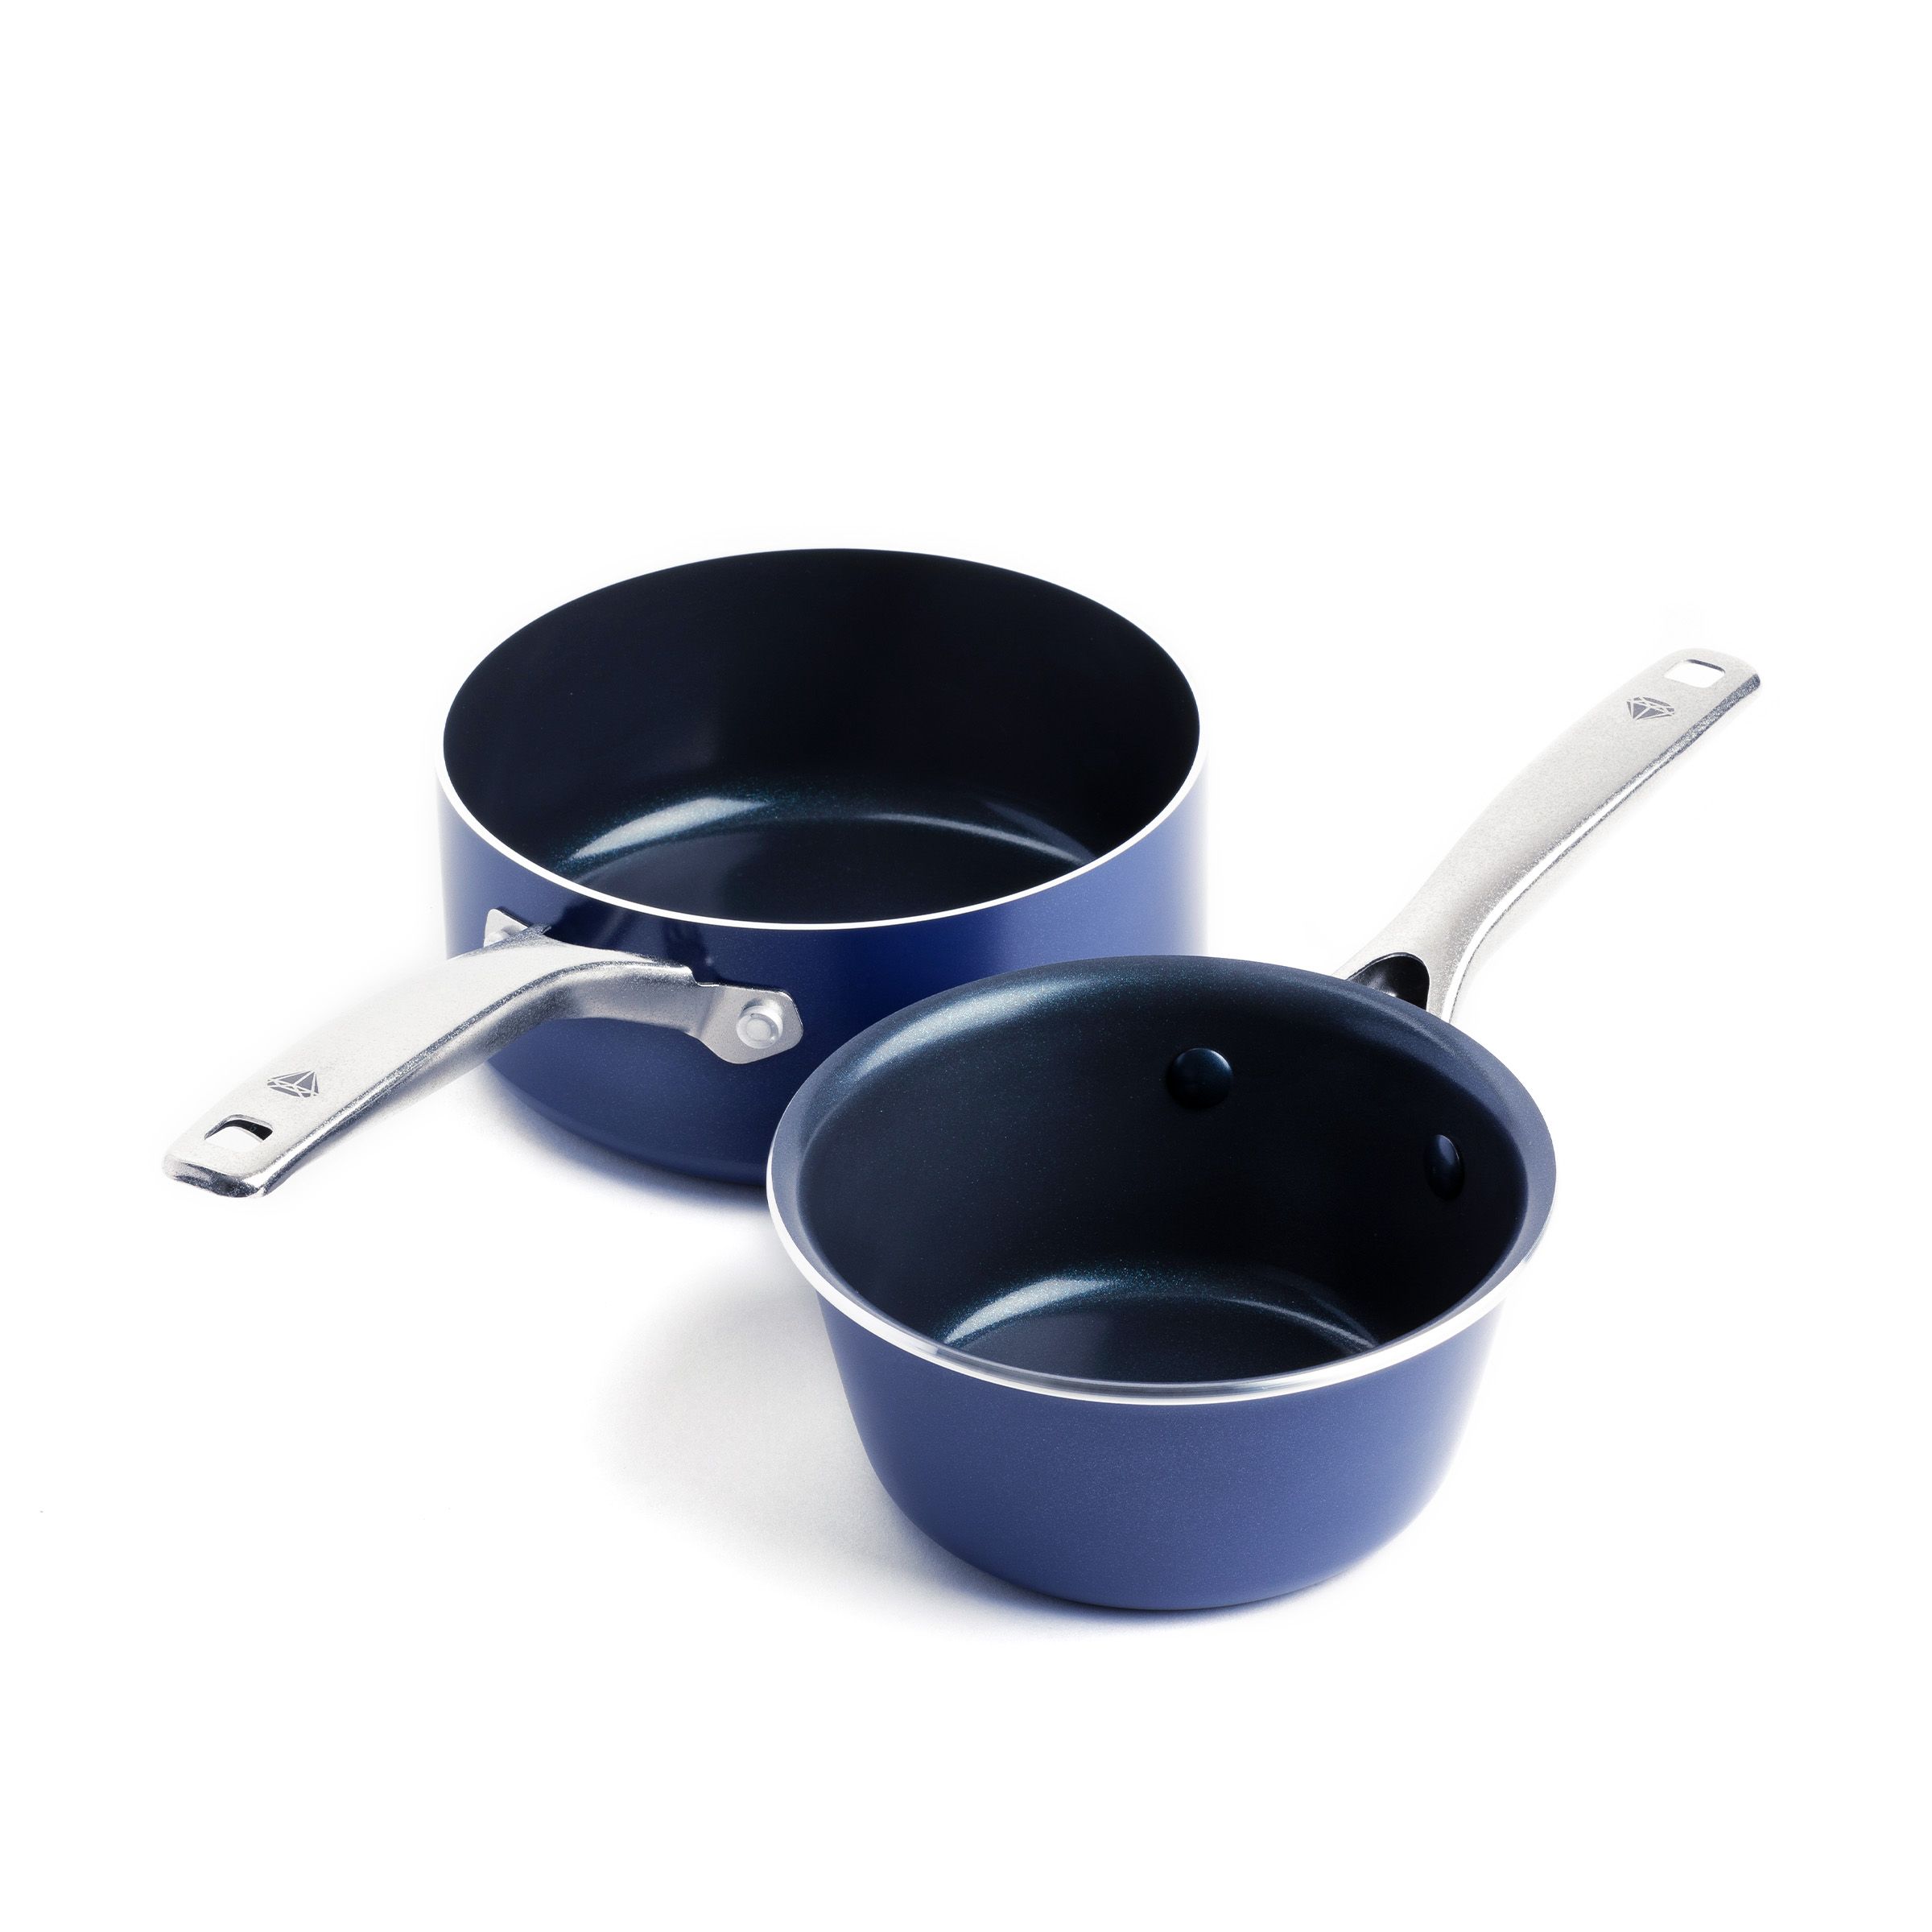 Fingerhut - Blue Diamond 11-Pc. Nonstick Stainless Steel and Aluminum  Cookware Set